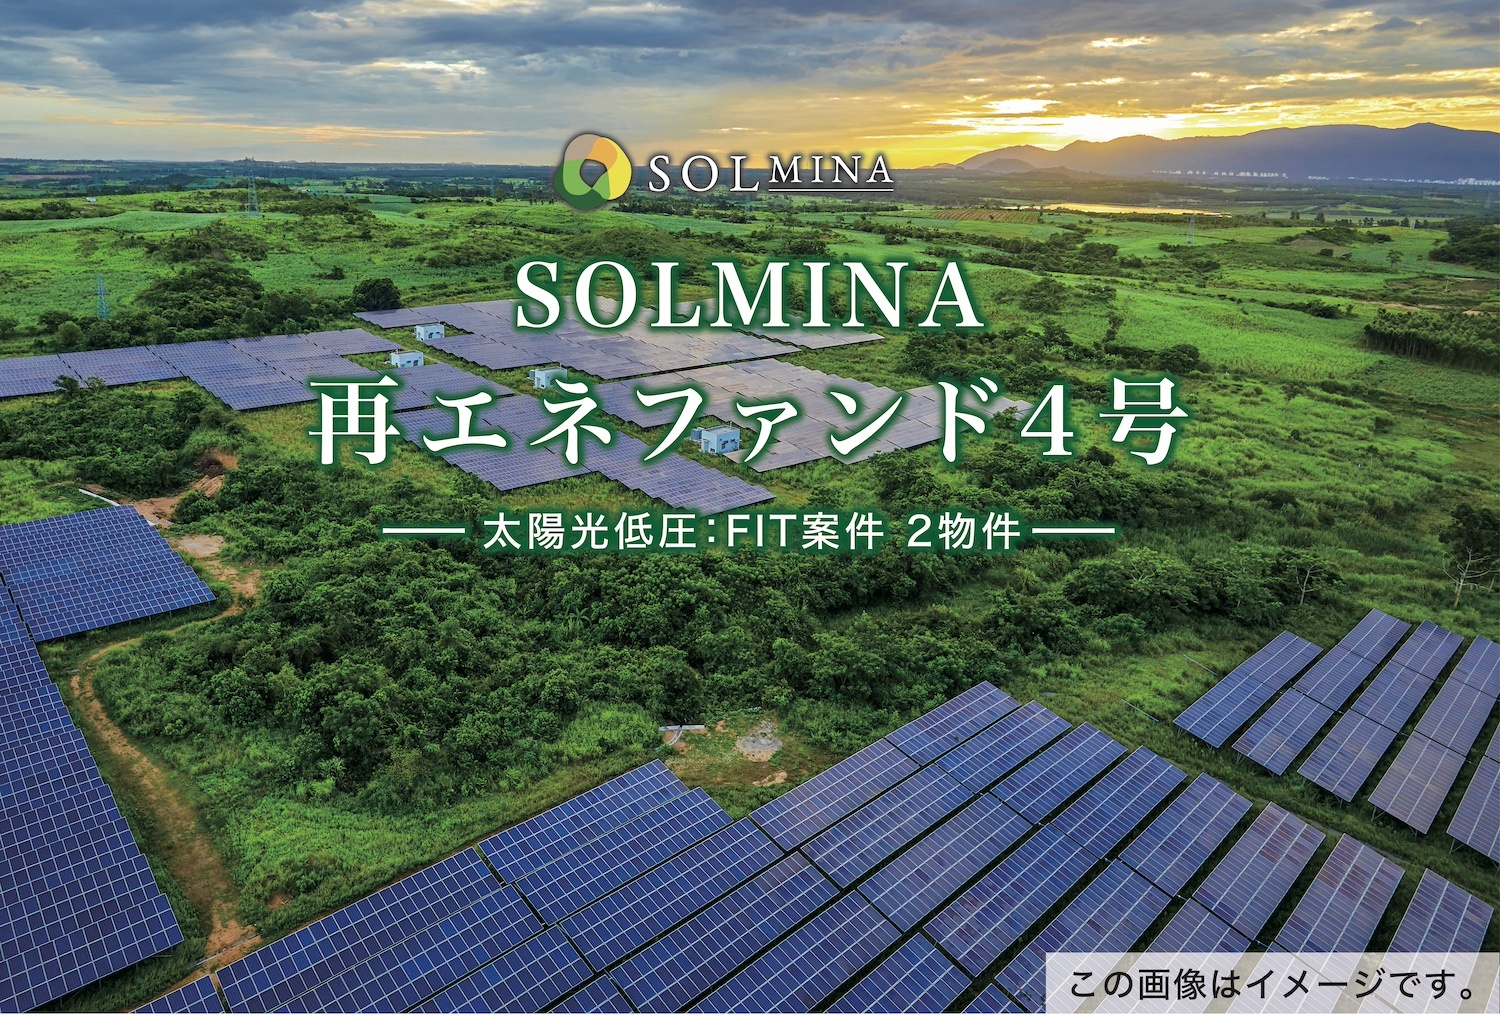 地球にエコな太陽光クラウドファンディング
『SOLMINA(ソルミナ)』が
新しい太陽光発電ファンドの募集を
12月5日13:00より開始